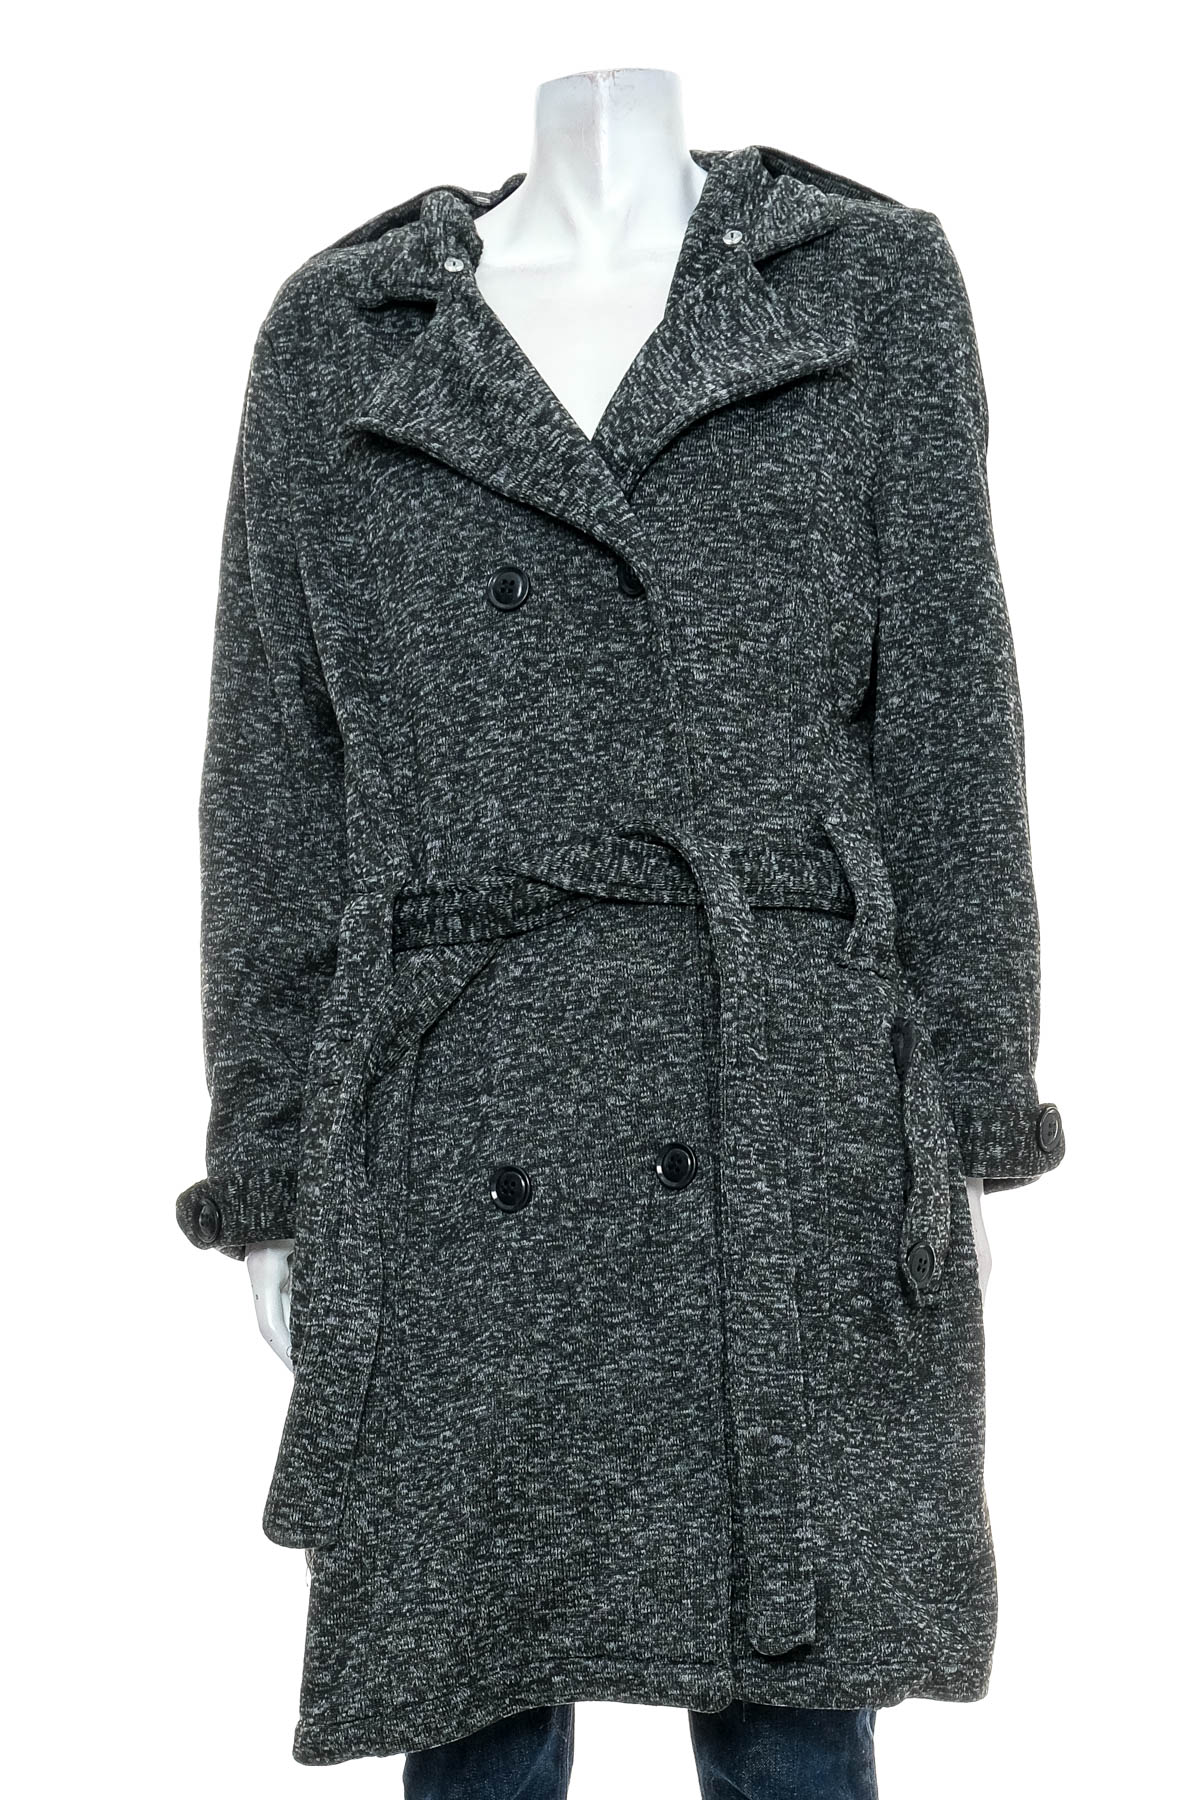 Women's coat - YoKi - 0